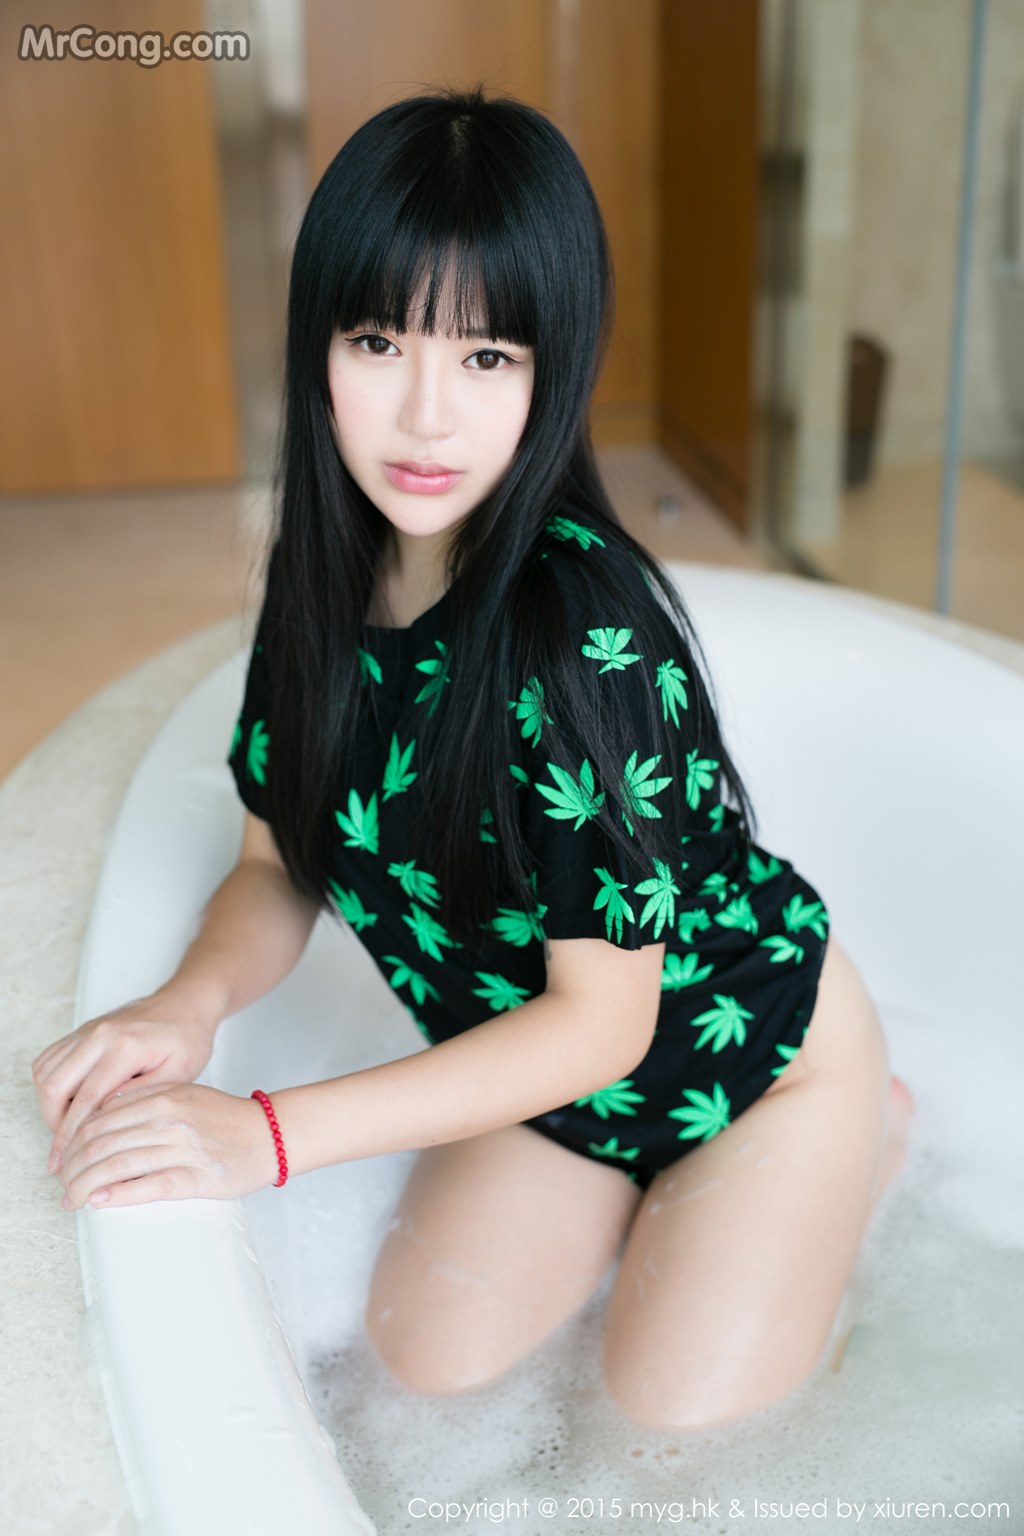 MyGirl Vol.092: Models Ba Bao icey (八宝 icey) and Fiona (伊 雨 蔓) (42 photos) photo 2-7